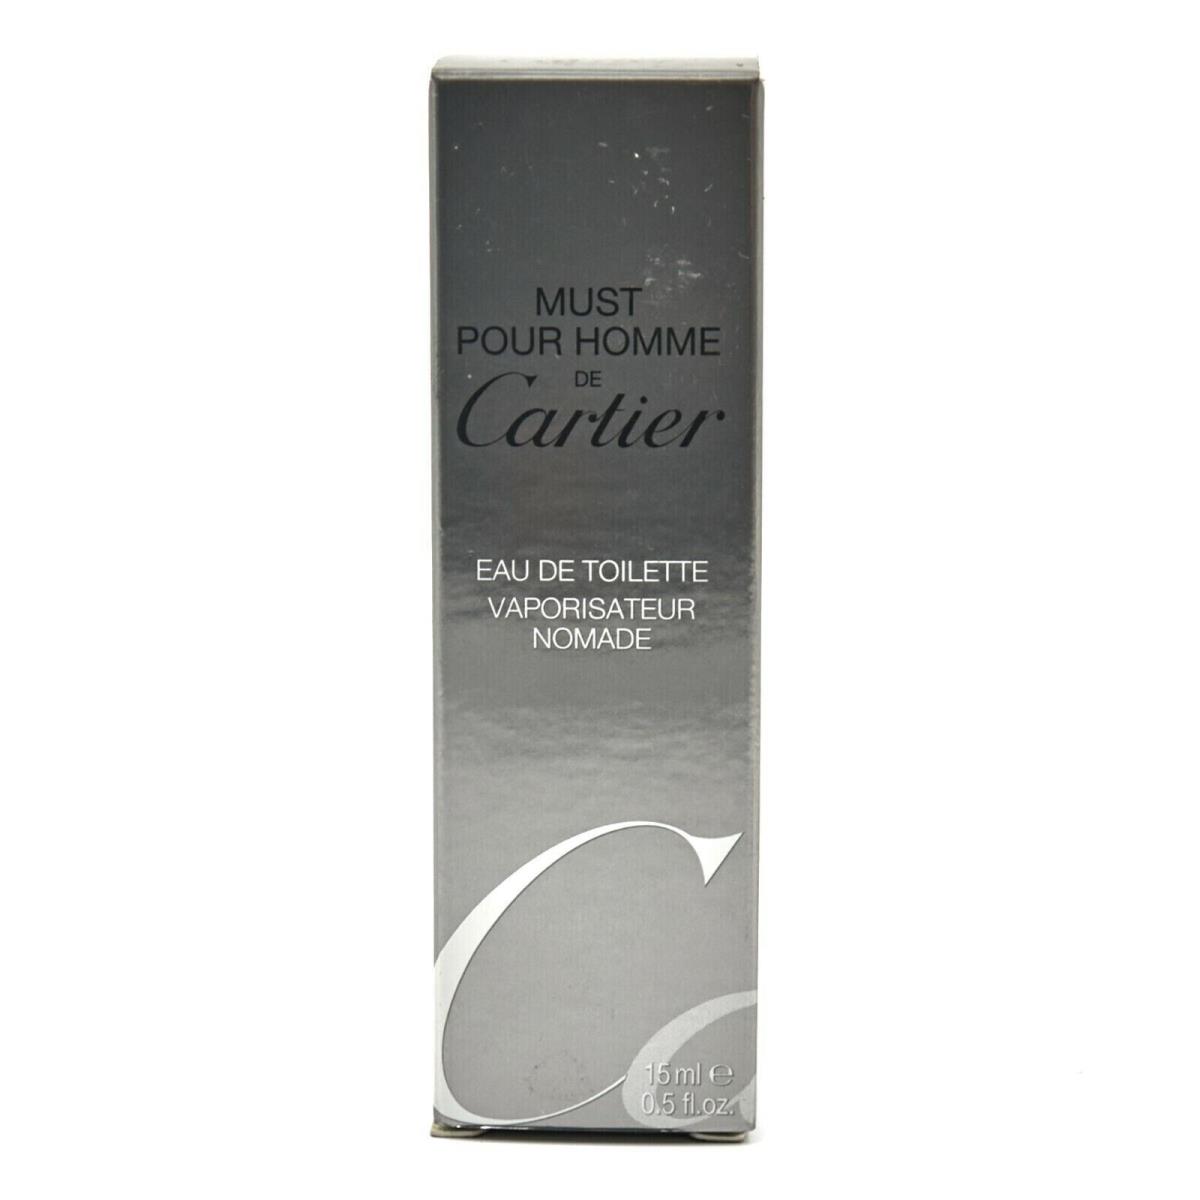 Cartier Must Pour Homme Edt 15ml 0.5 Fl.oz. Spray Vintage Cologne